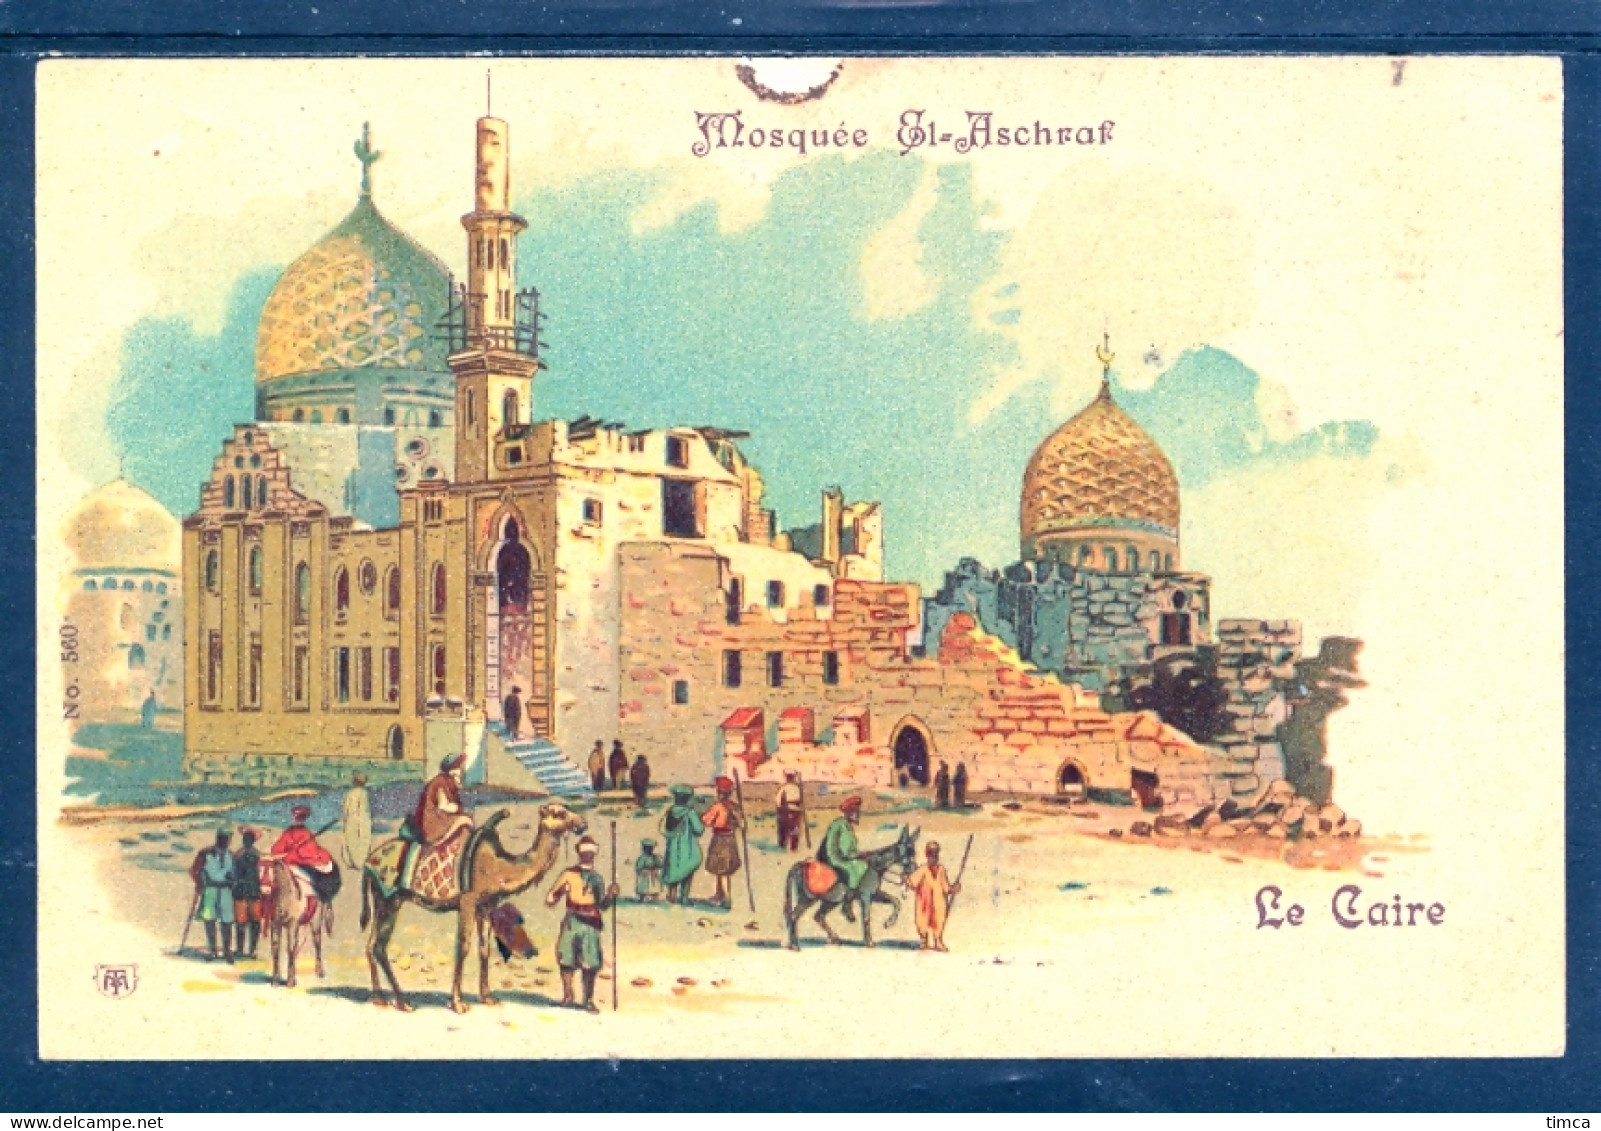 15012 Le Caire - Mosquée El-Aschraf (Litho) - Pub. Chocolat Et Cacao Compagnie Suisse, Lugano - Cairo